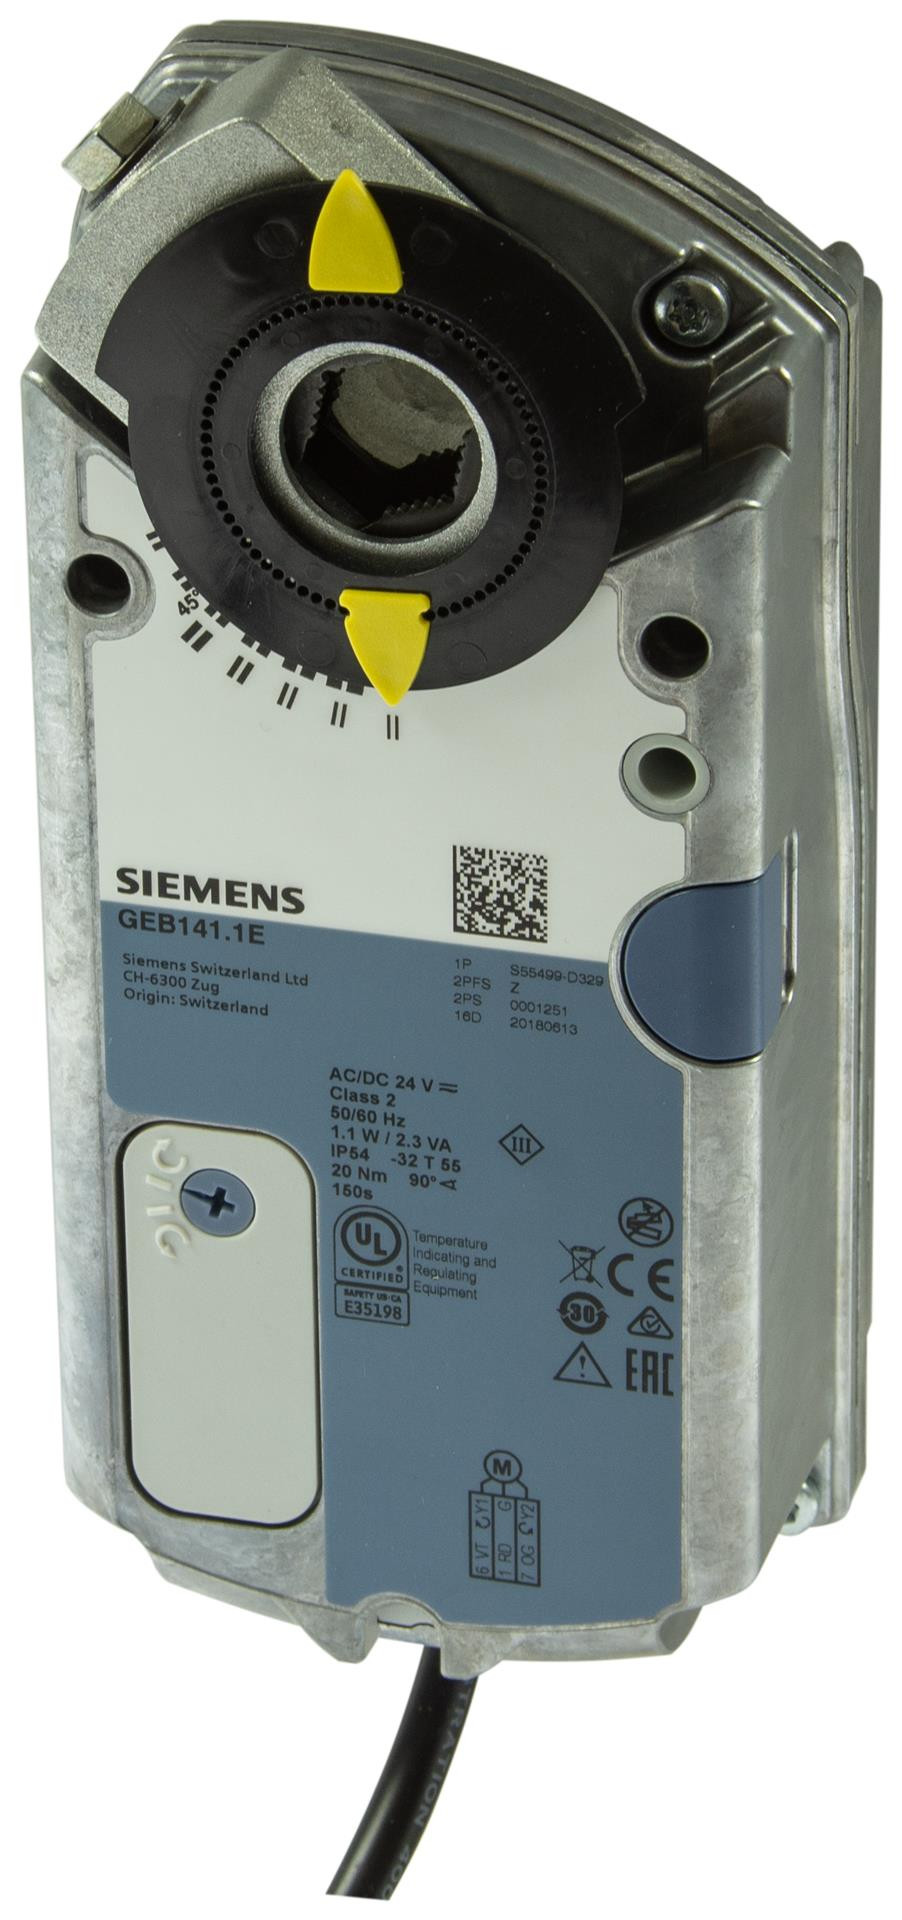 Siemens Luftklappen-Drehantriebe 20 Nm ohne Federrücklauf GEB341.1E